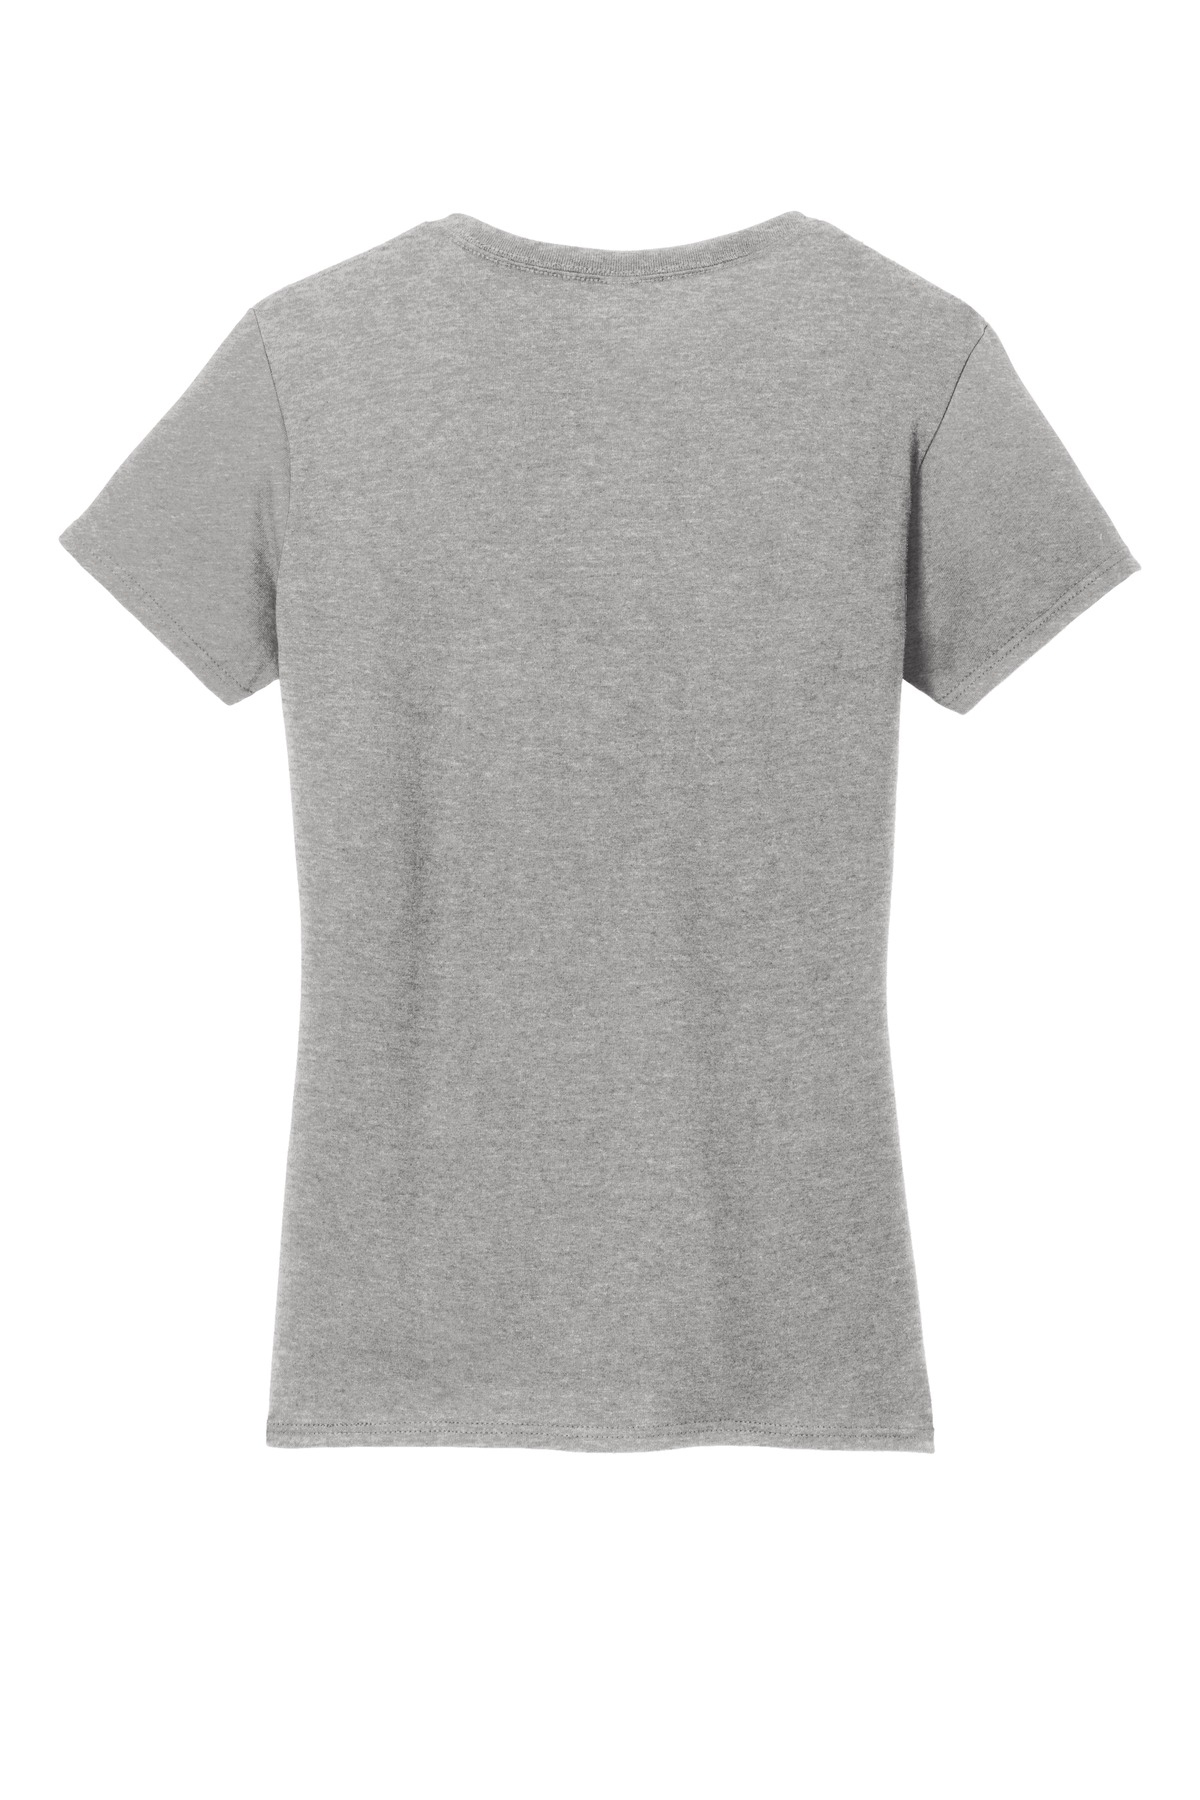 Gildan Ladies Heavy Cotton 100% Cotton V-Neck T-Shirt | Product | SanMar